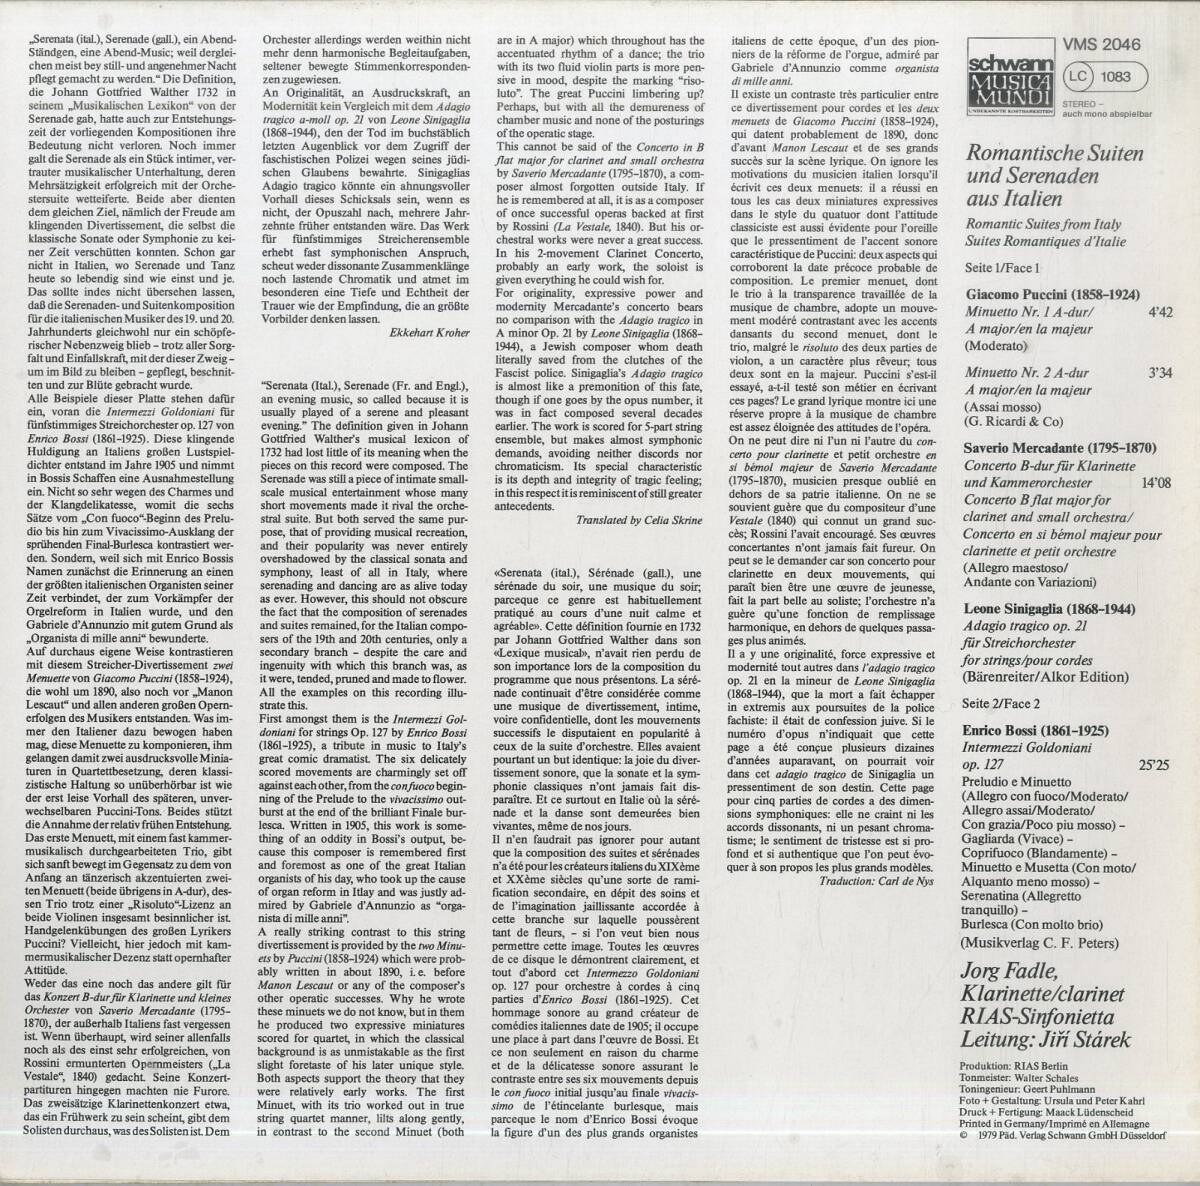 A00505191/LP/イェルク・ファトレ(Cl)/イルジー・スターレク(指揮)「Romantische Suiten Und Serenaden Aus Italien (1979年・VMS-2046)の画像2